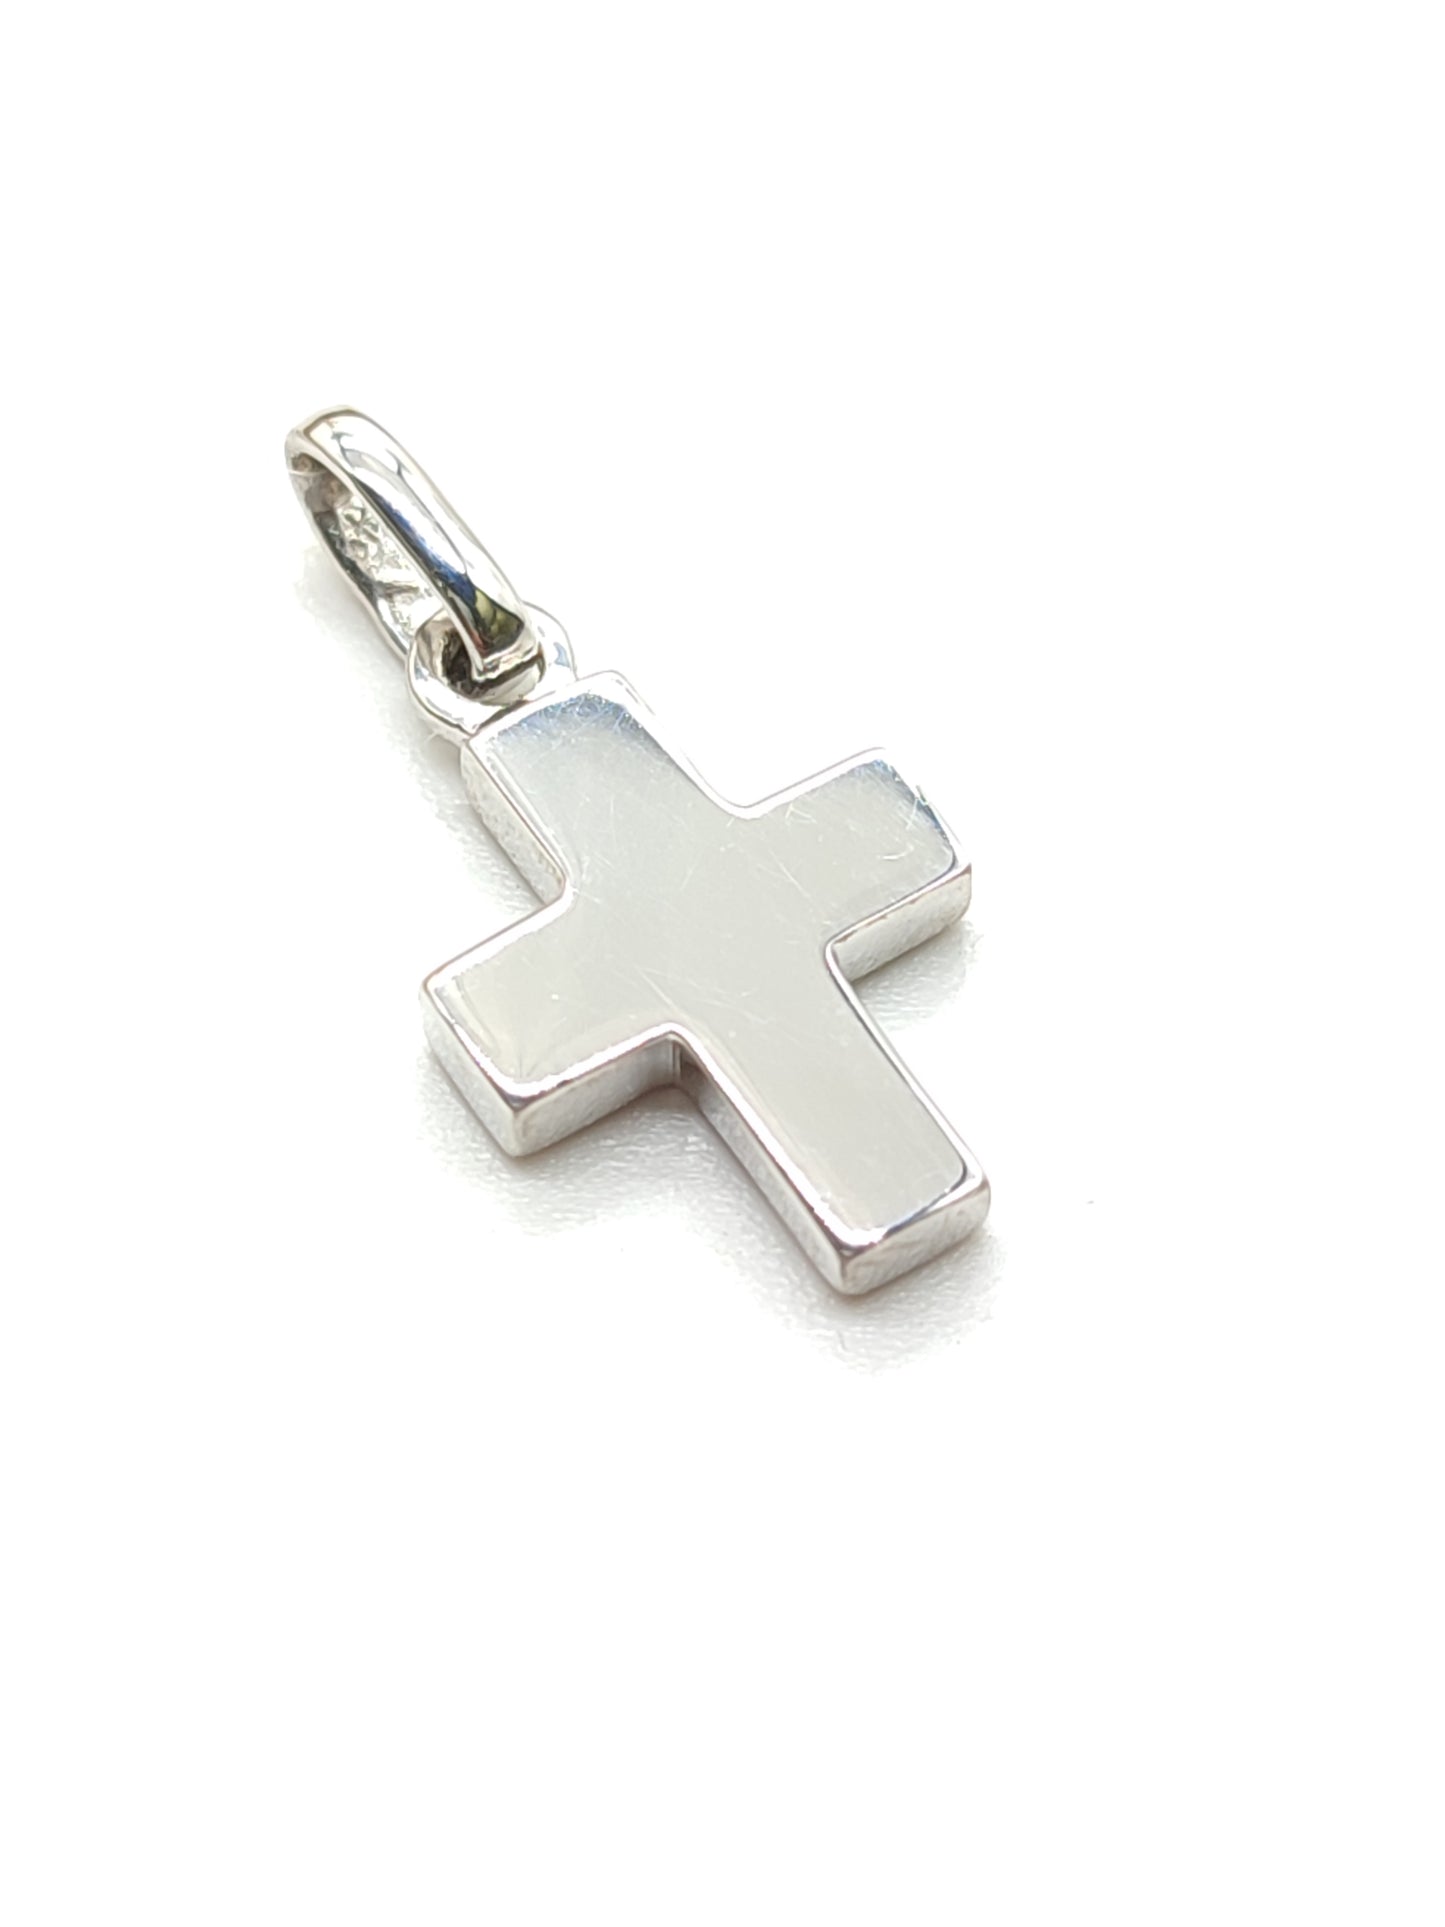 Shaped cross pendant in silver